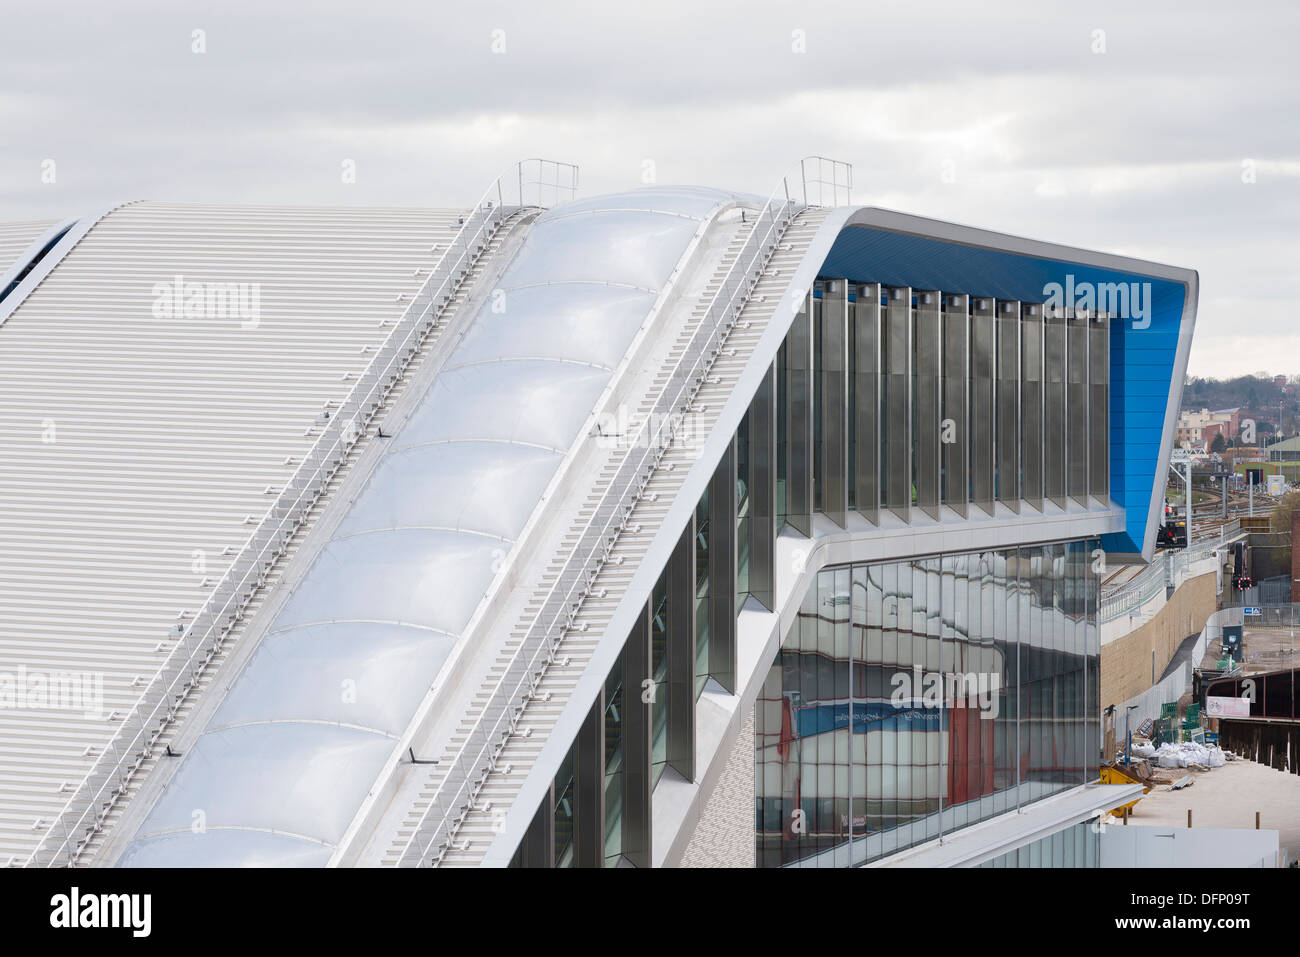 La lettura di stazione ferroviaria, Reading, Regno Unito. Architetto: Grimshaw, 2015. Vista in elevazione della vetrata ponte di trasferimento. Foto Stock